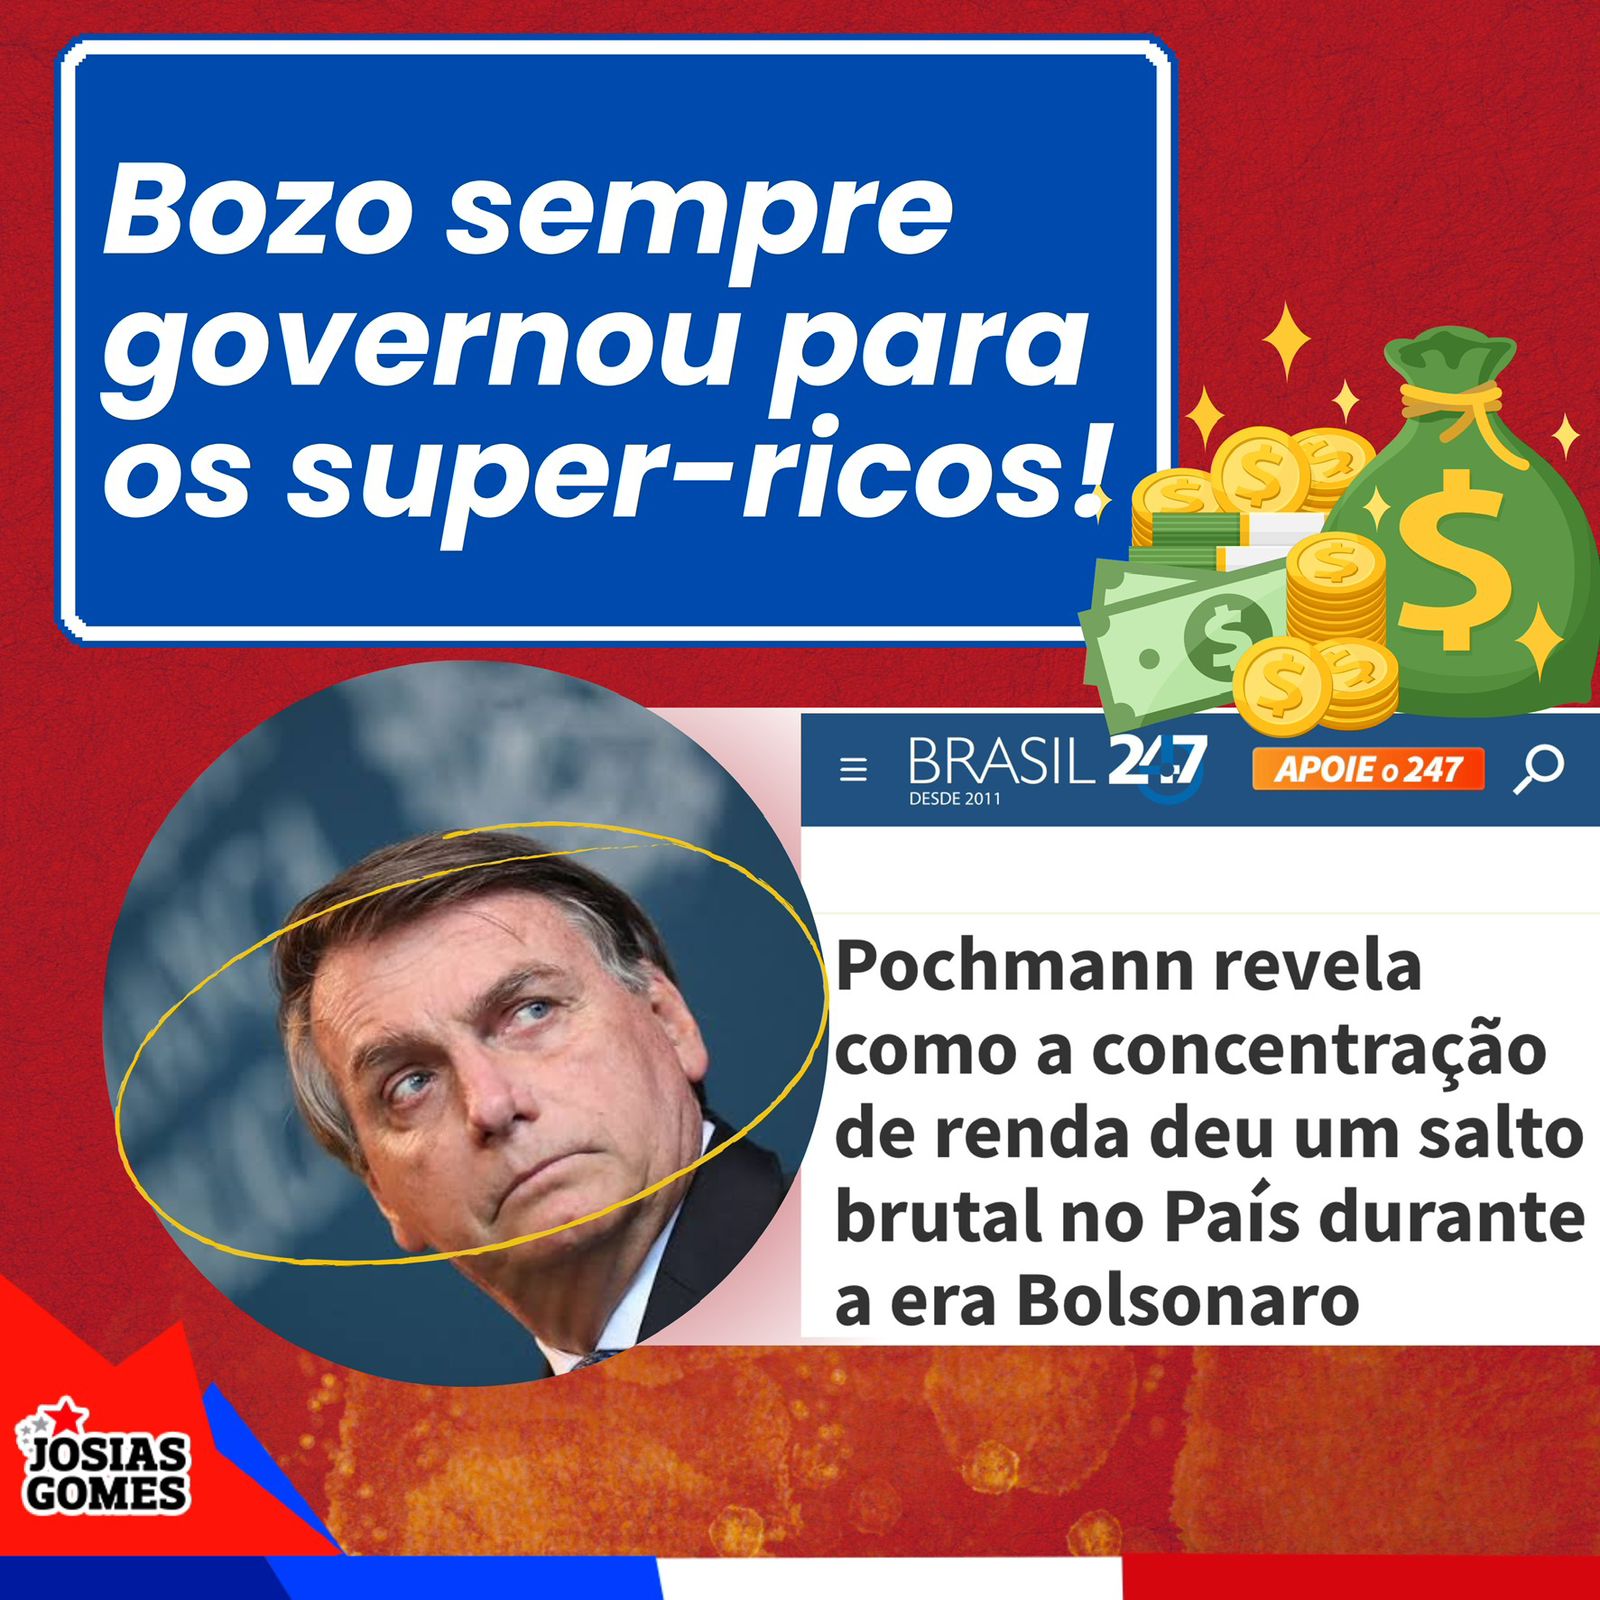 Bolsonaro Aumentou A Concentração De Renda No Brasil E Beneficiou Apenas Os Super-ricos!